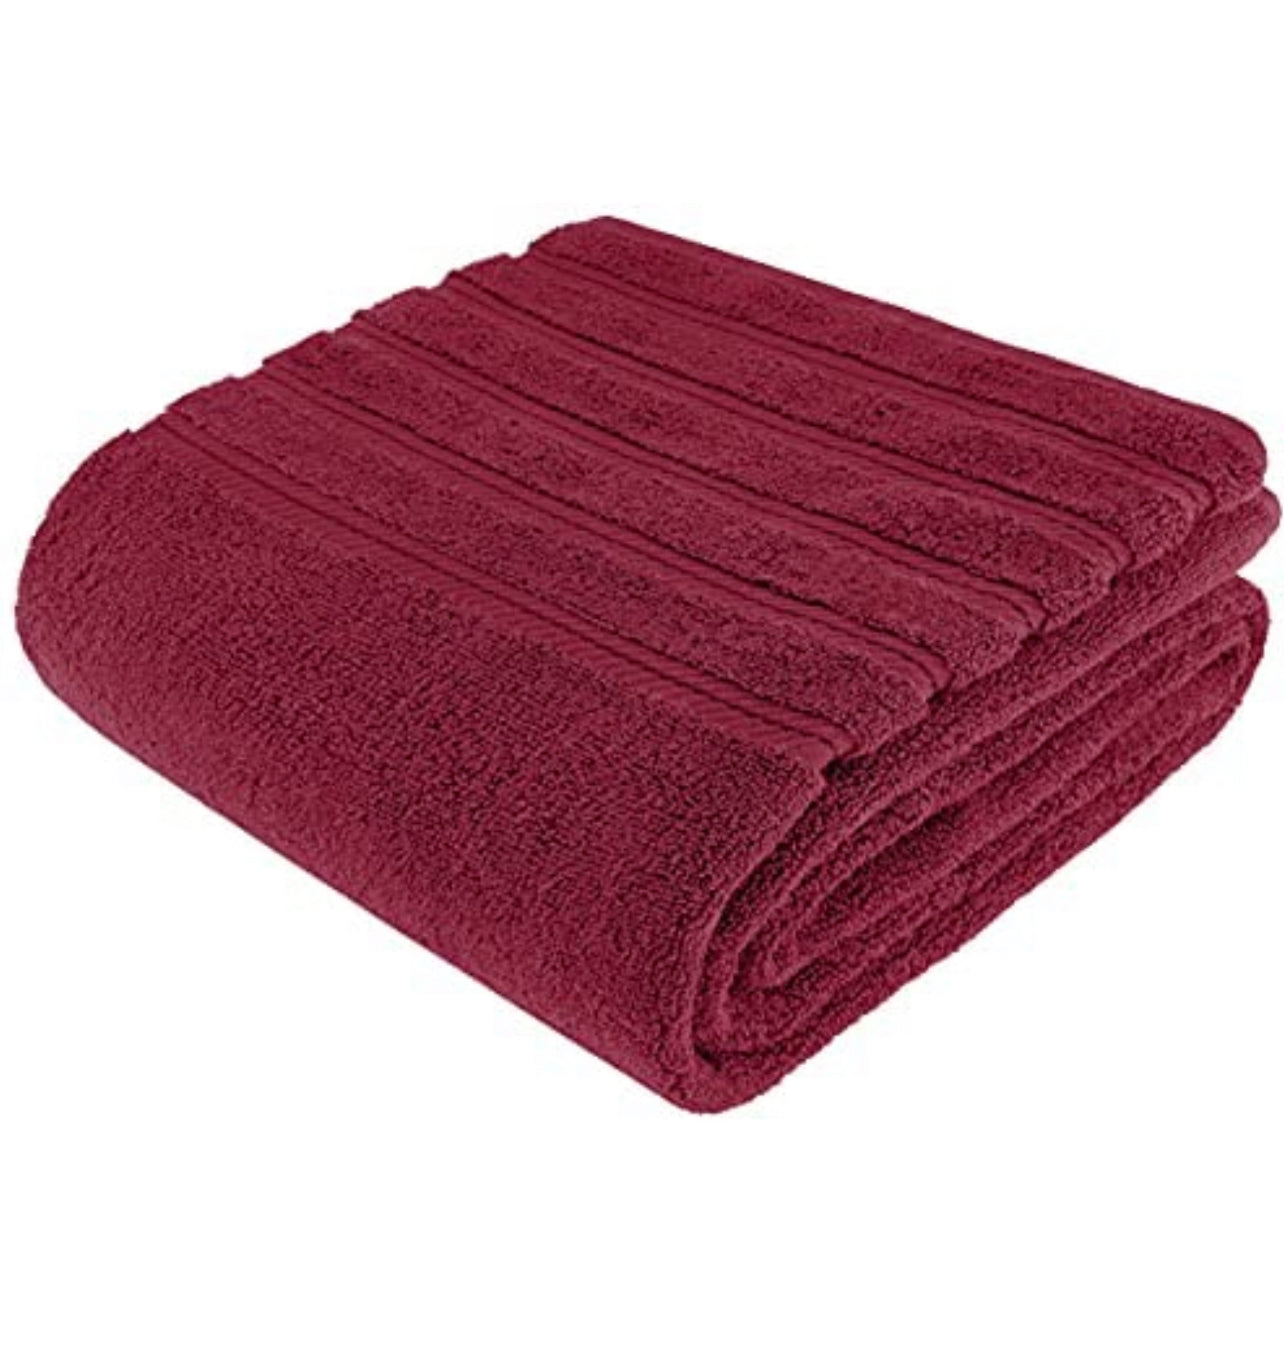 Premium Wash Cloths & Towels